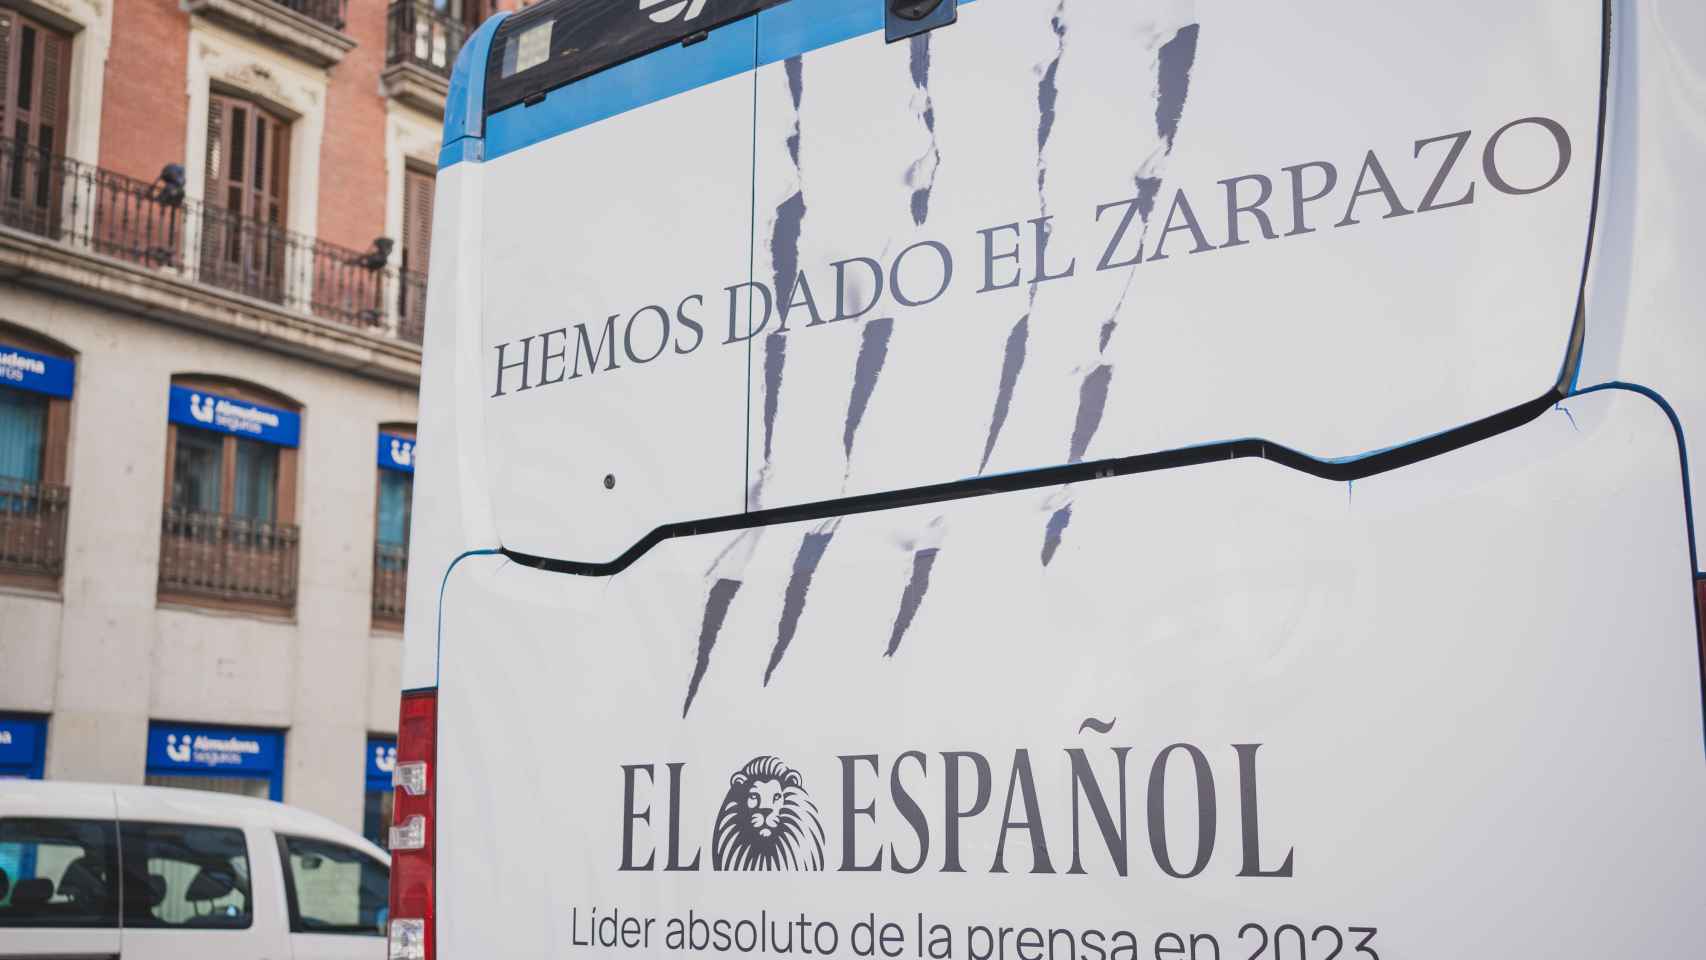 Campaña publicitaria de El Español en los autobuses: Hemos dado el zarpazo